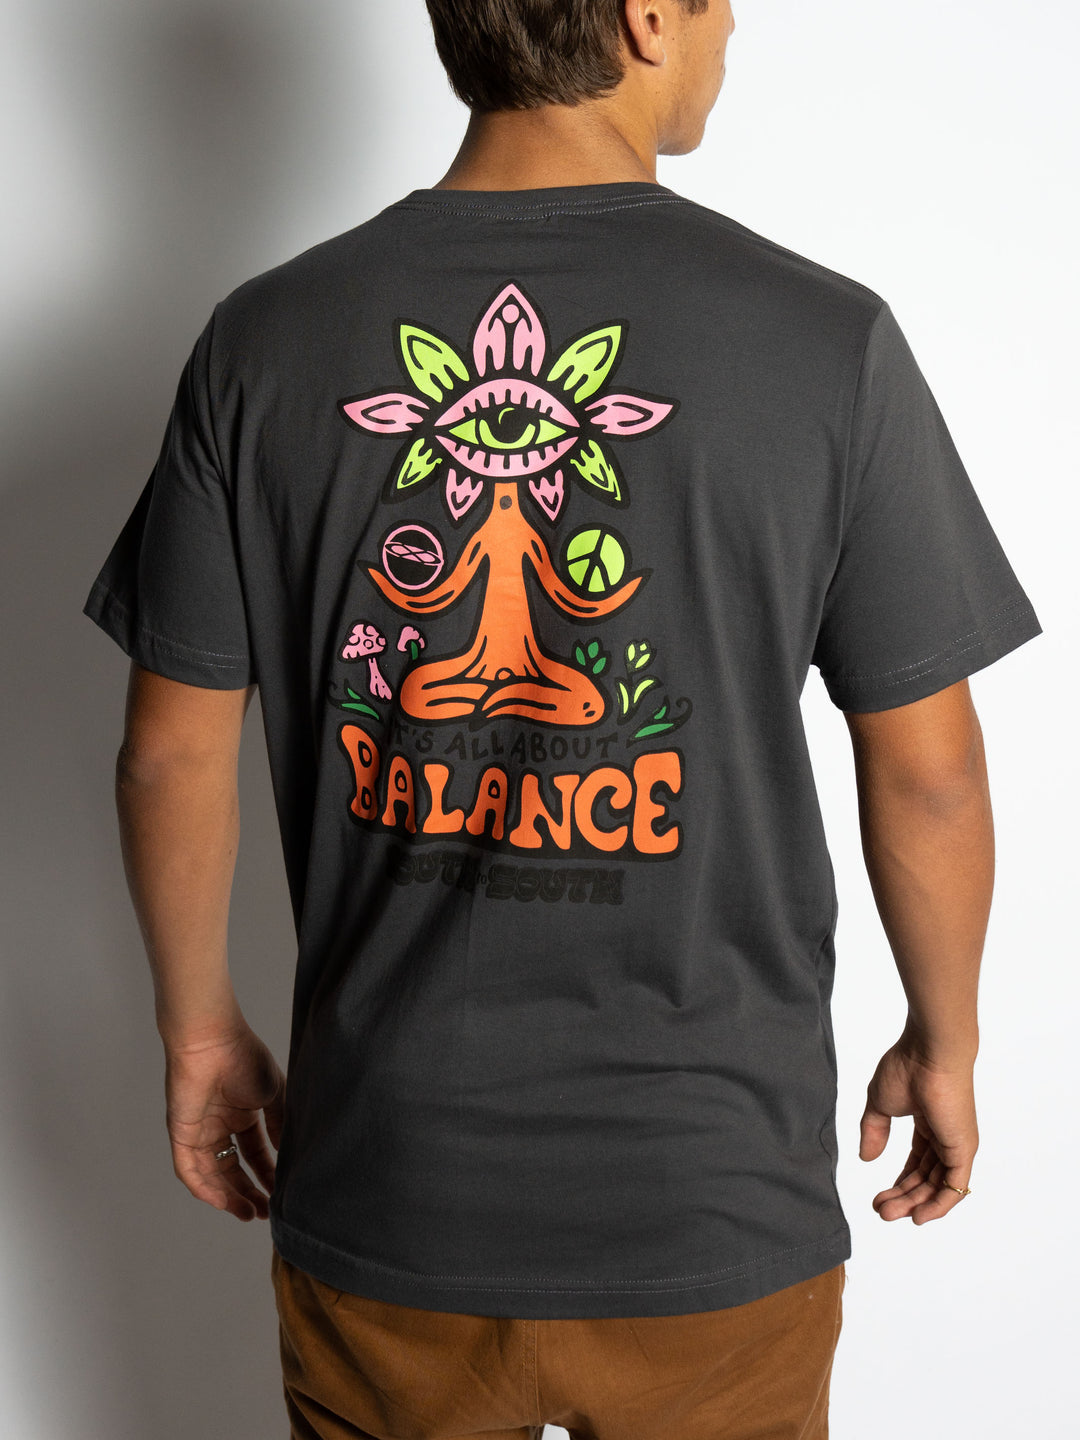 Camiseta "Balance"